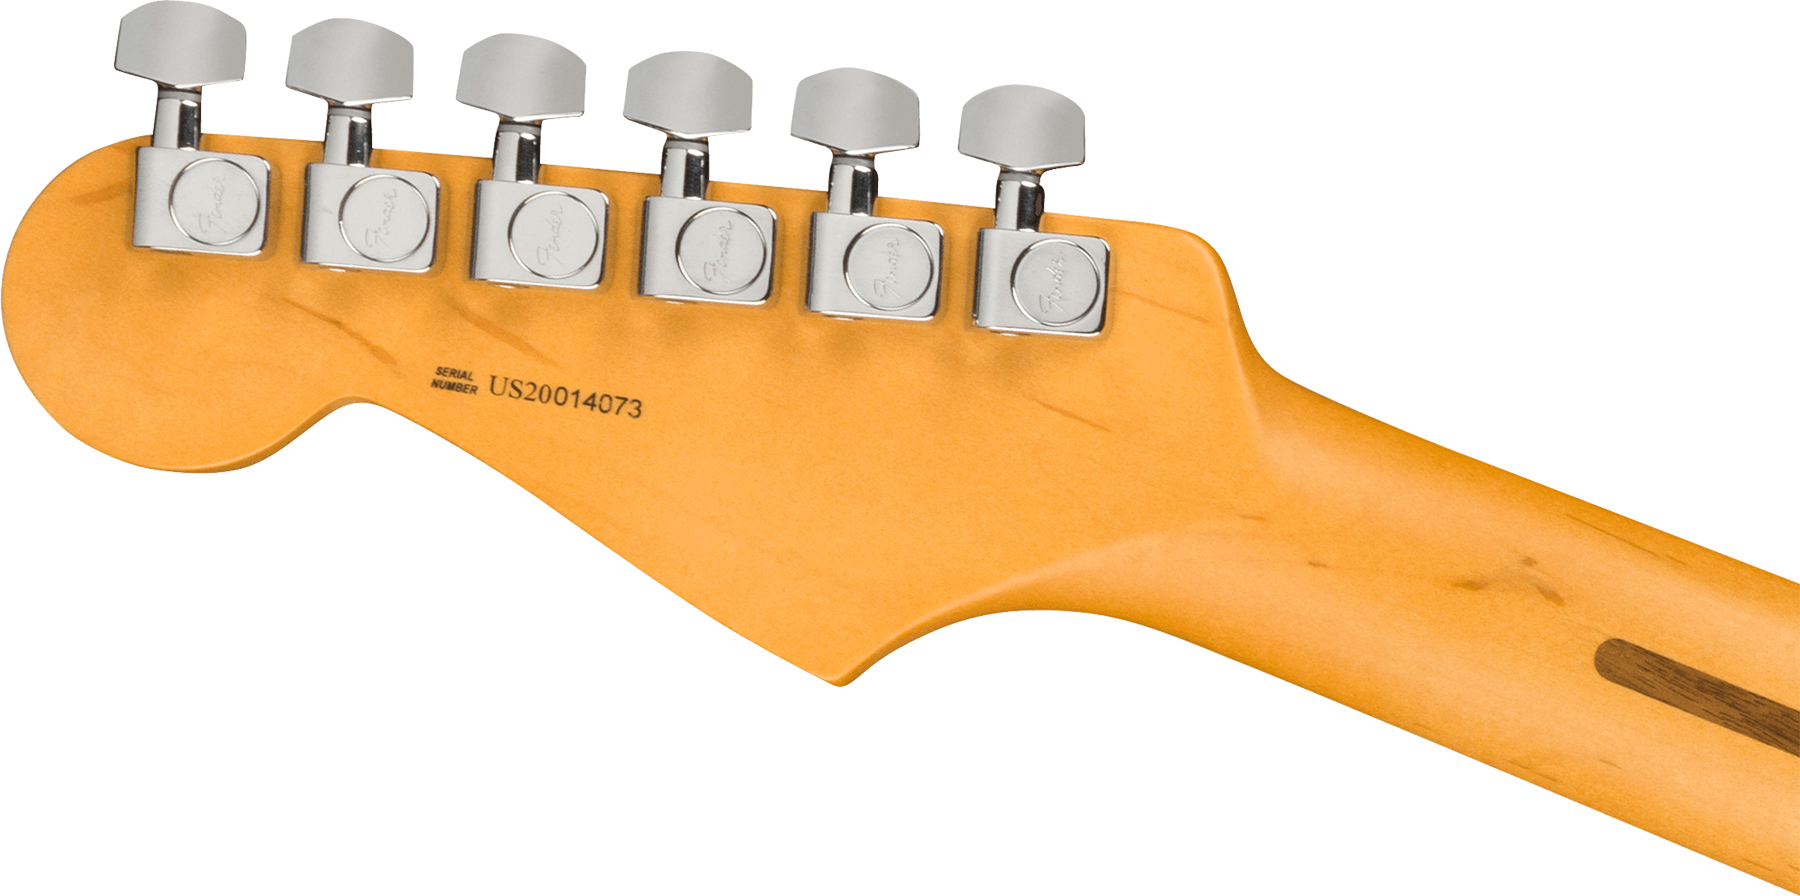 Fender Strat American Professional Ii Usa Rw - Olympic White - Elektrische gitaar in Str-vorm - Variation 3